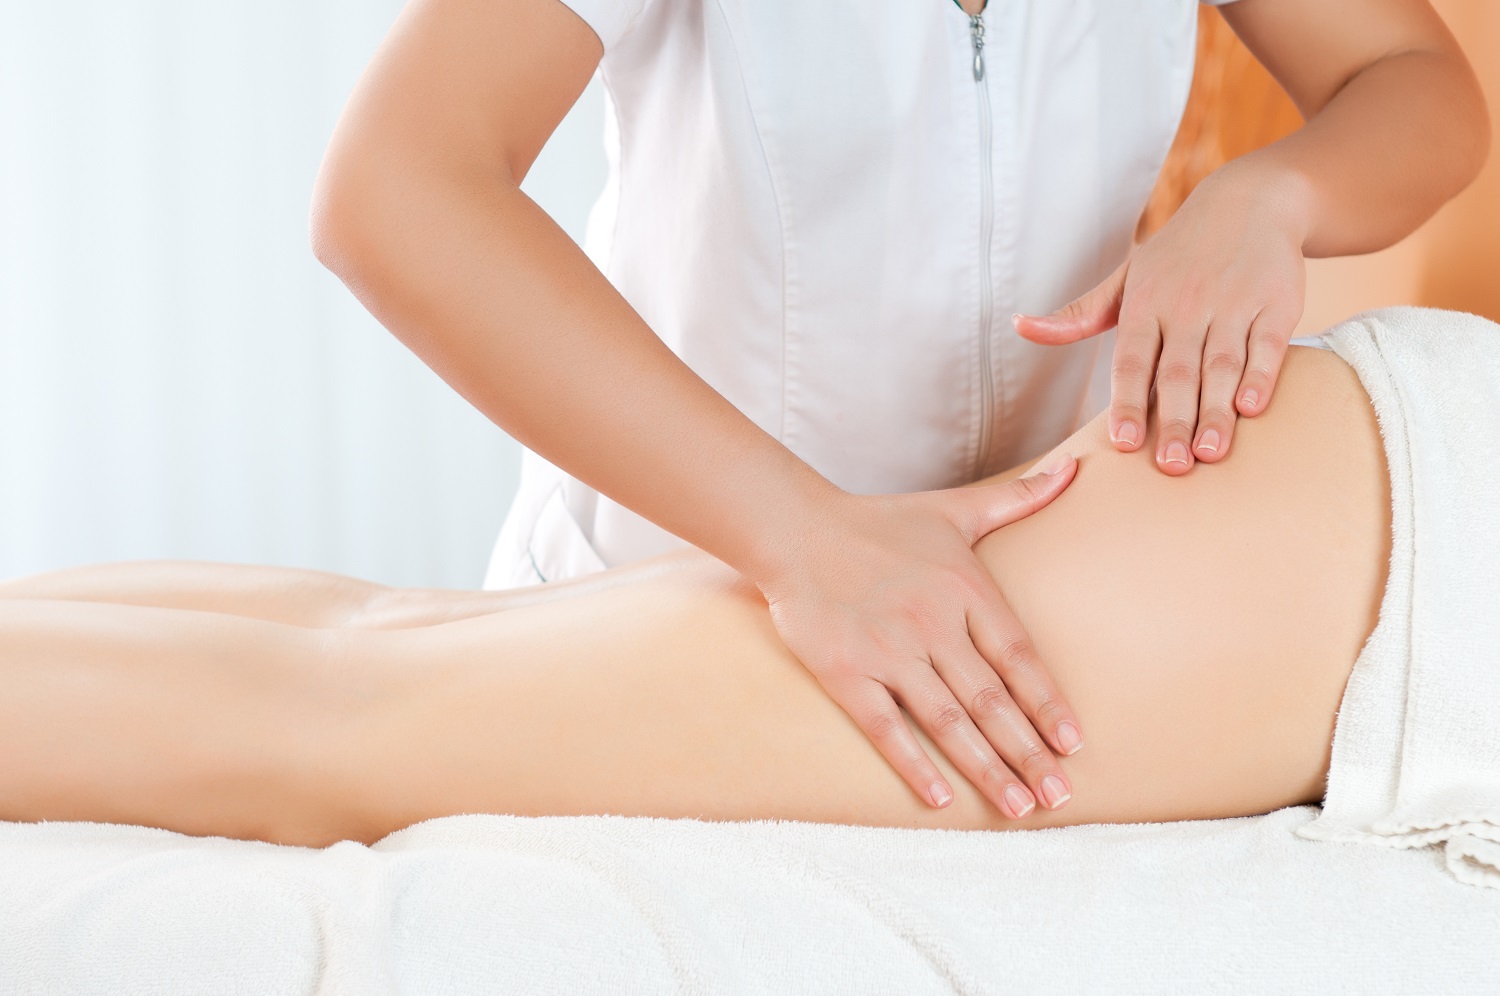 Phương pháp trị liệu massage mông mang đến nhiều lợi ích cho sức khỏe